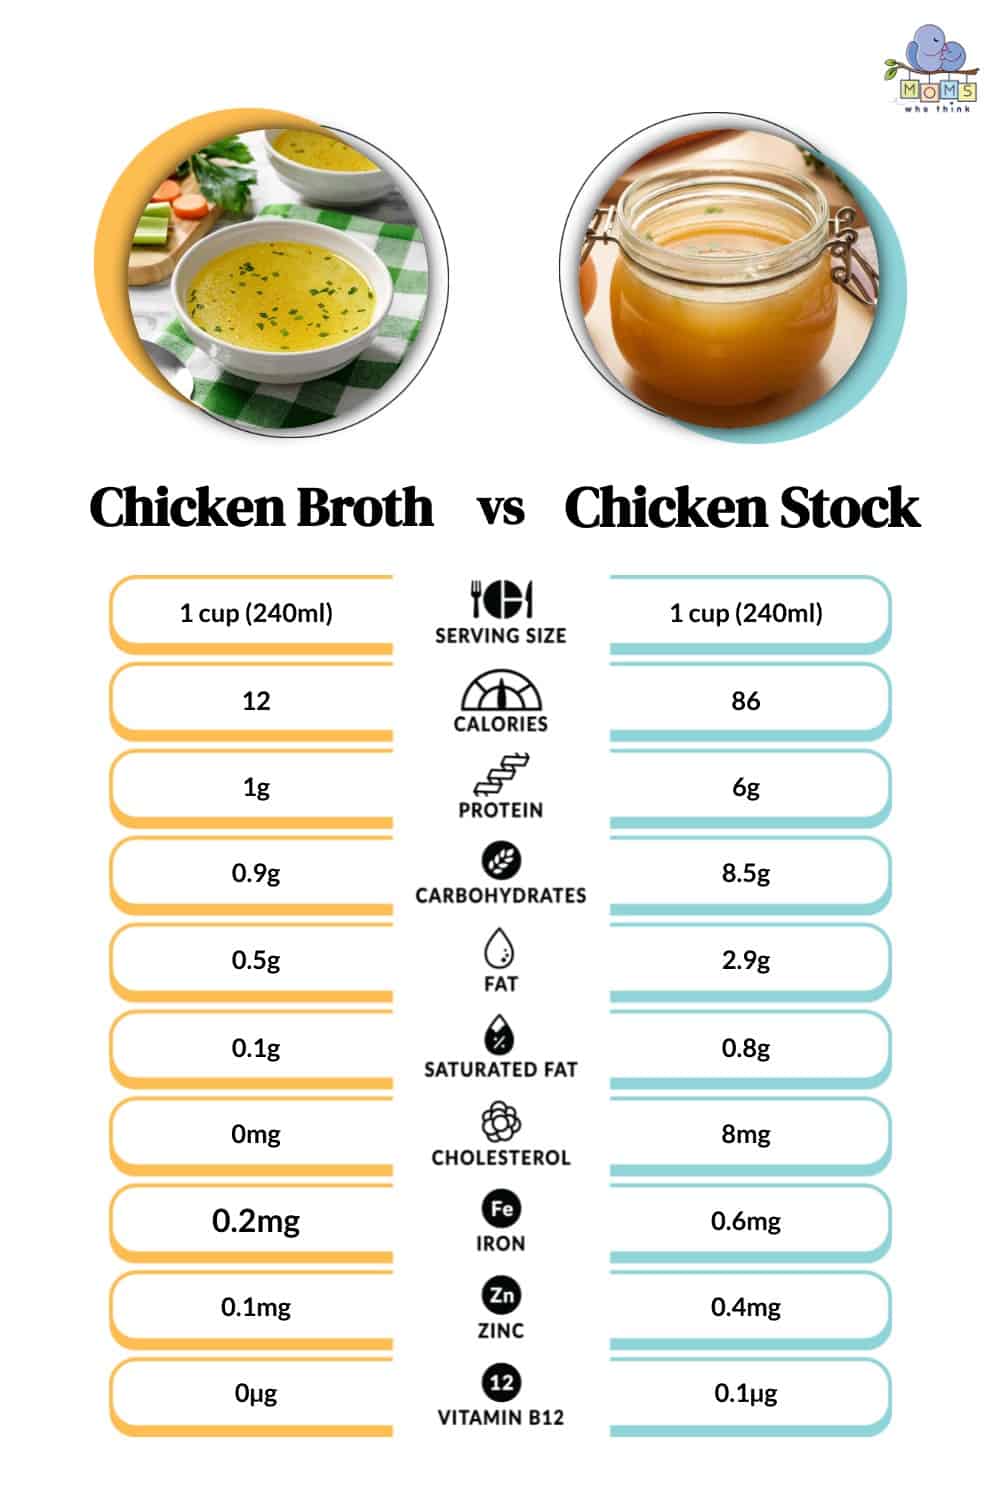 Chicken Broth vs Chicken Stock Nutrition